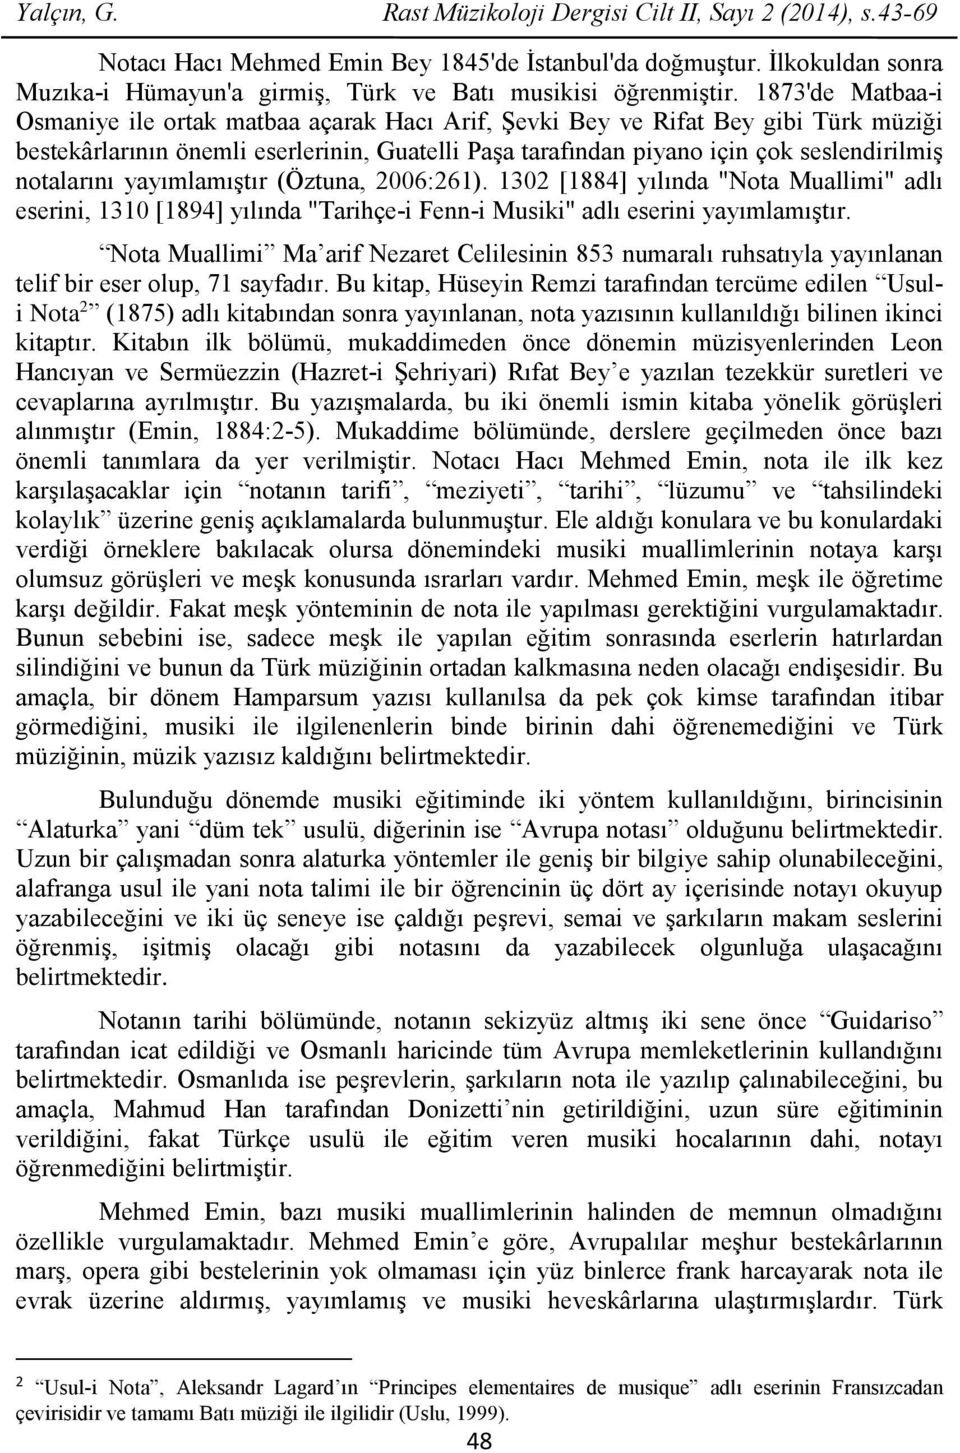 1873'de Matbaa-i Osmaniye ile ortak matbaa açarak Hacı Arif, Şevki Bey ve Rifat Bey gibi Türk müziği bestekârlarının önemli eserlerinin, Guatelli Paşa tarafından piyano için çok seslendirilmiş